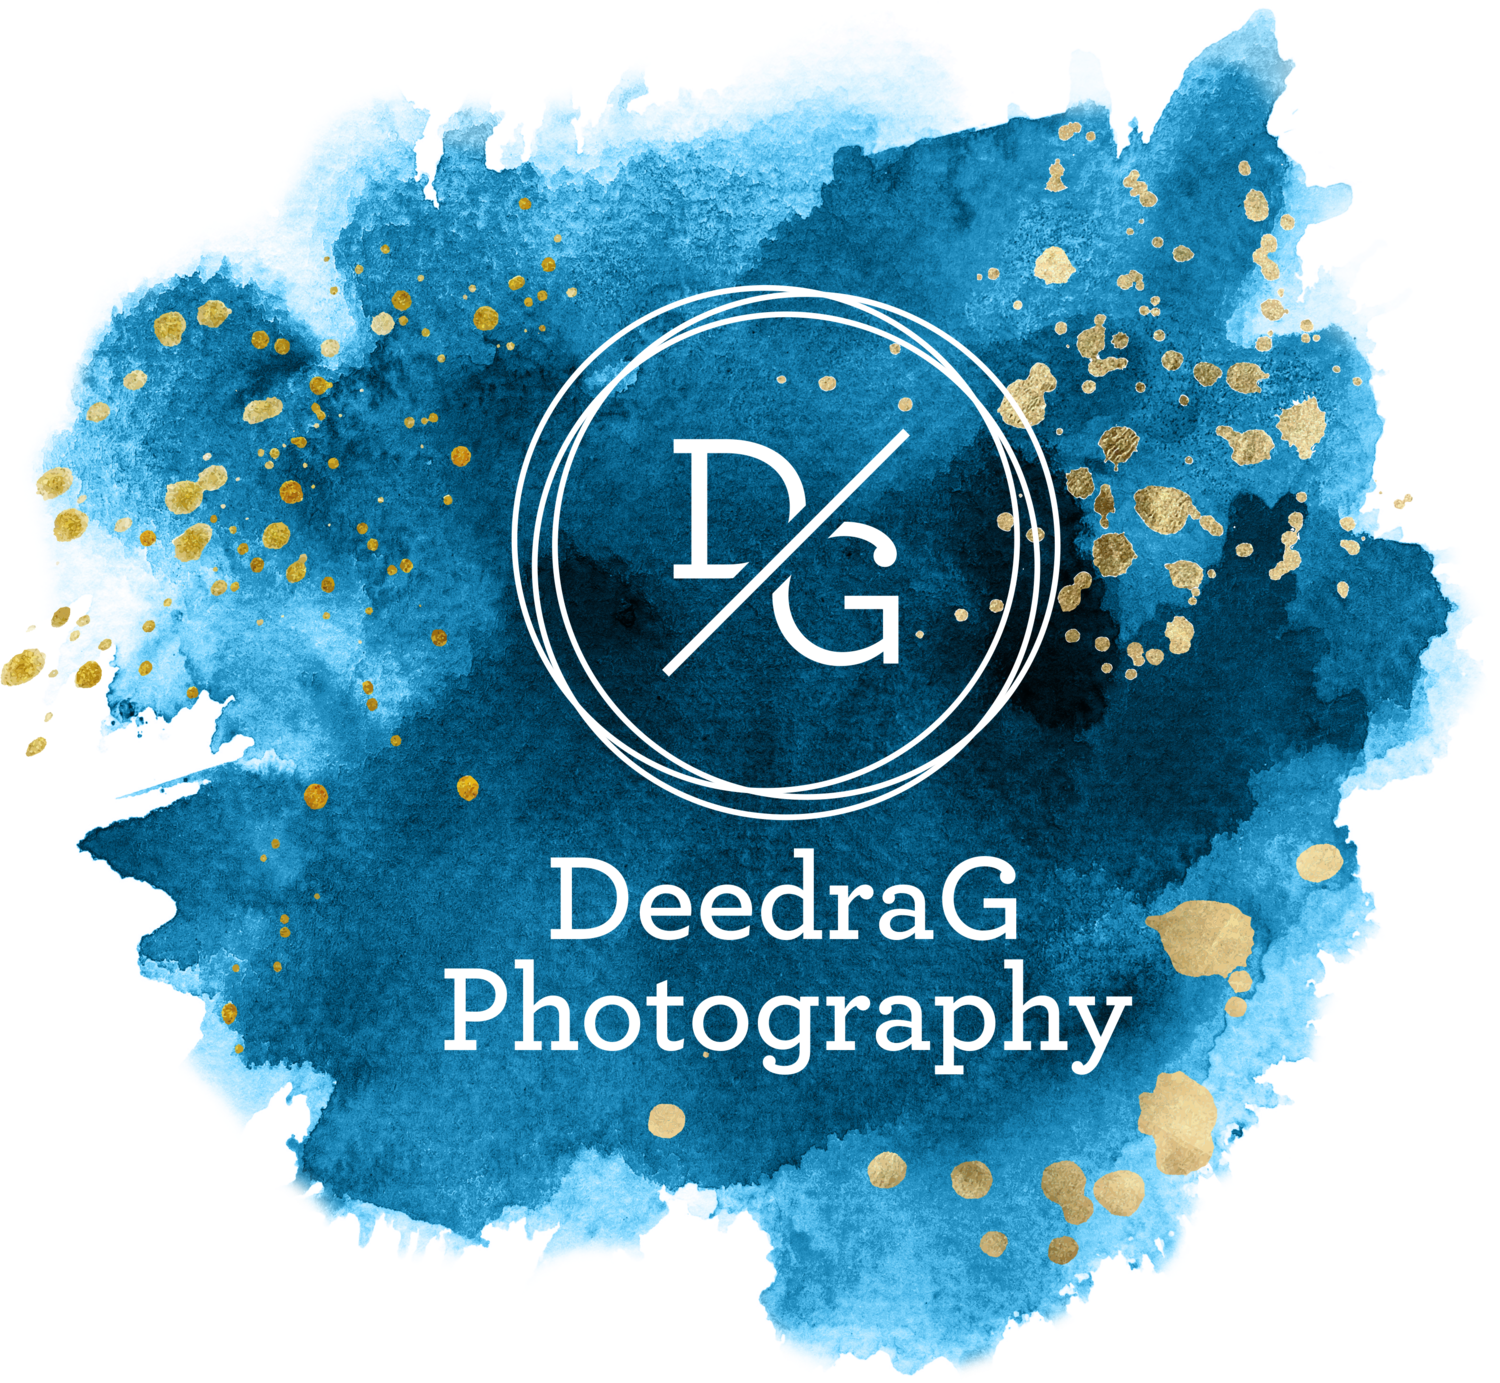 DeedraG Photography